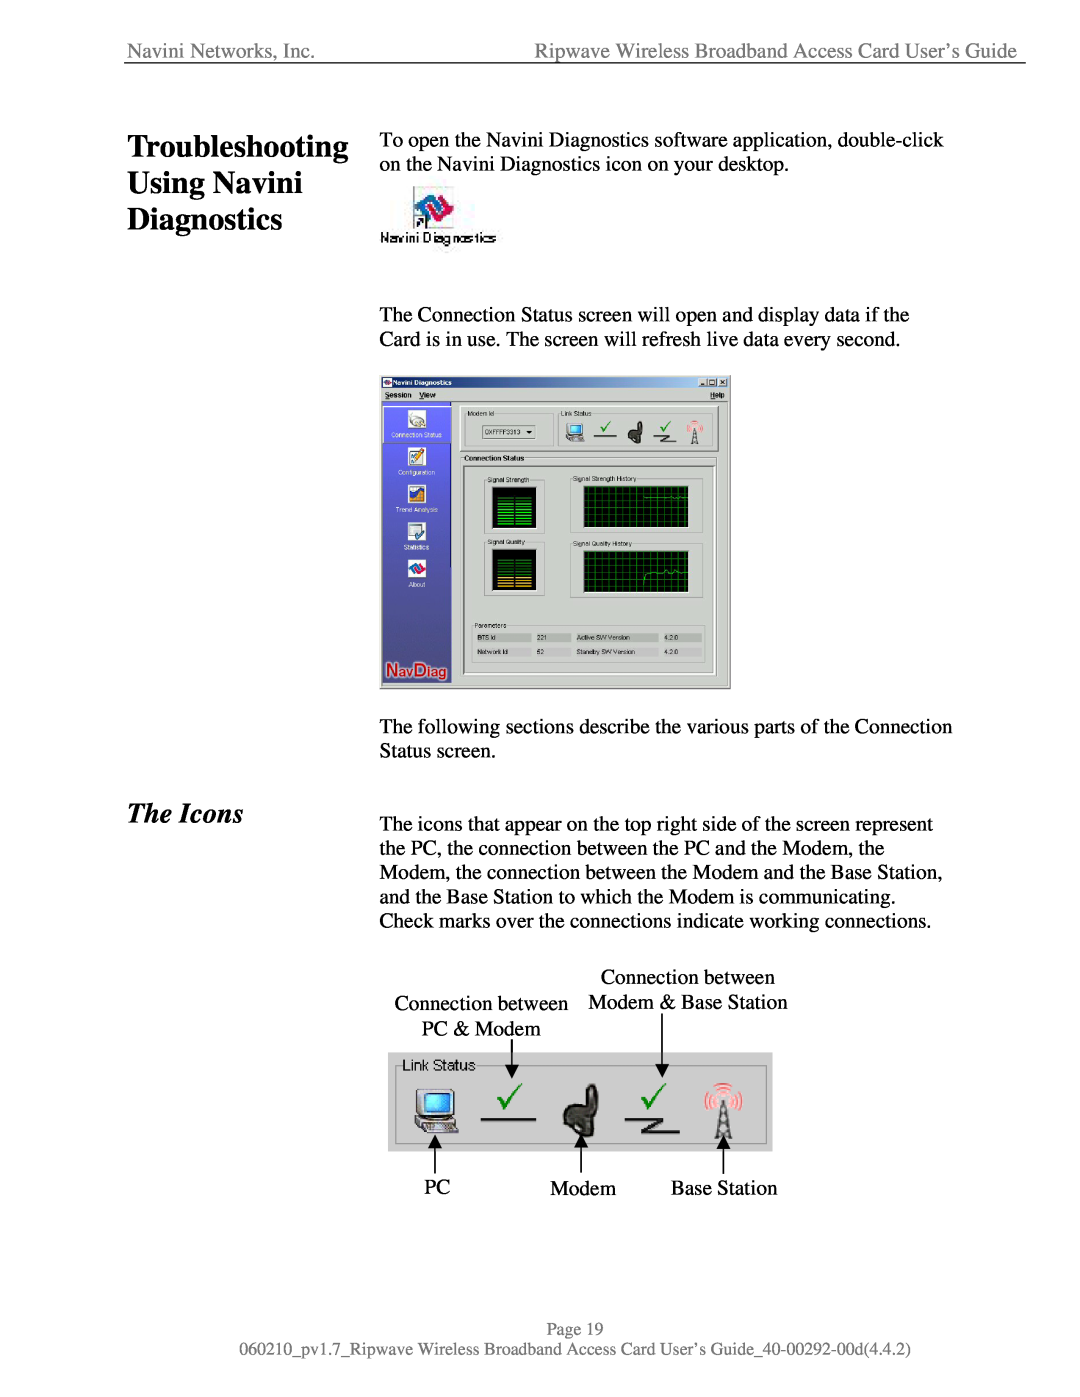 Navini Networks 40-00292-00 manual Troubleshooting Using Navini Diagnostics, The Icons, Navini Networks, Inc 